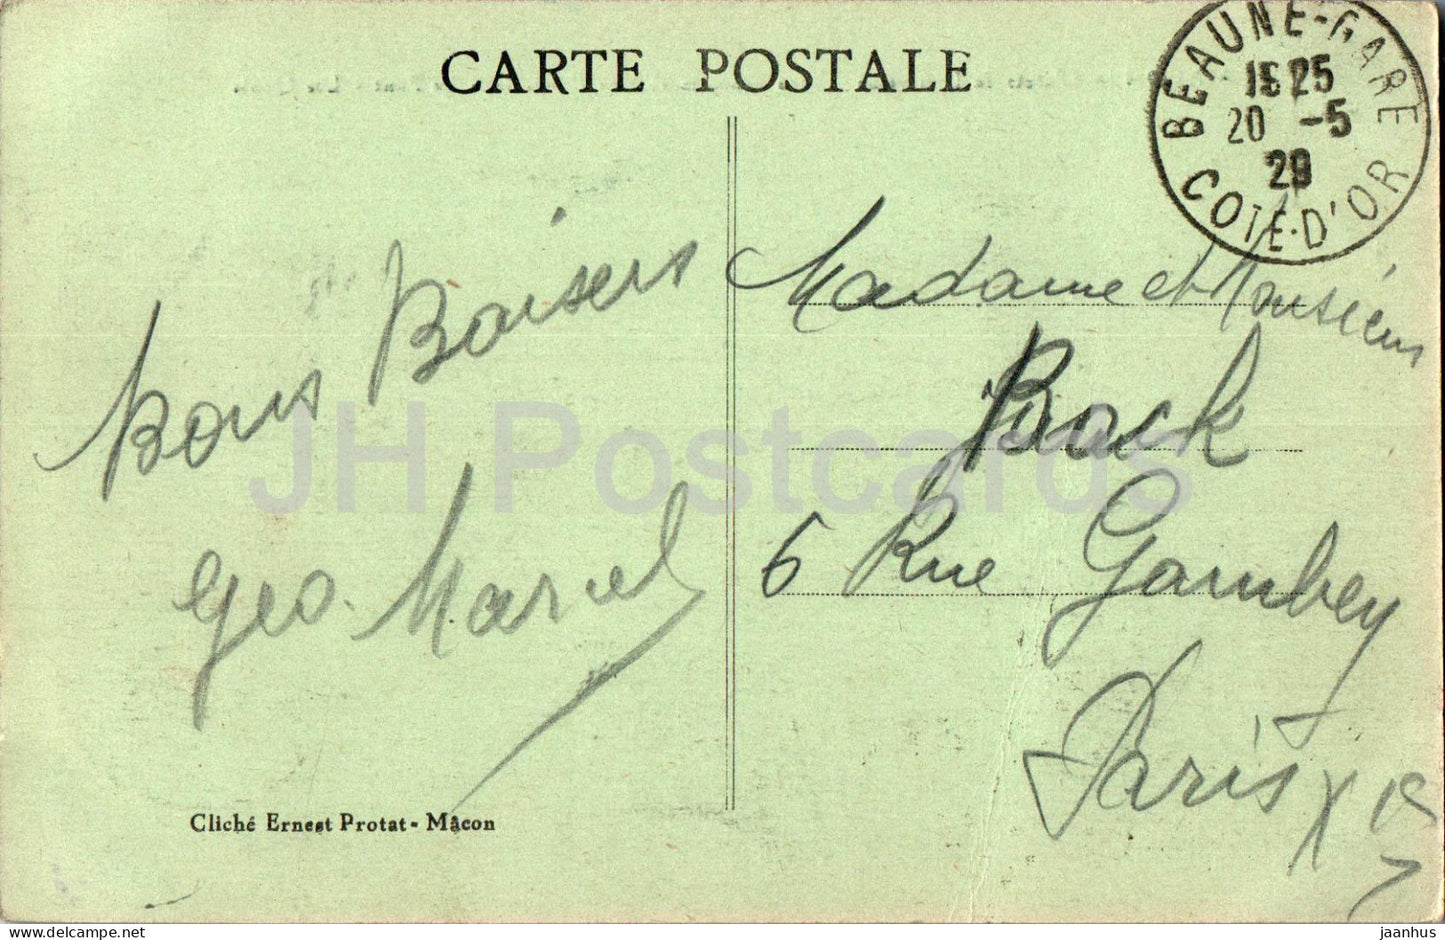 Macon - Vue Generale - Le Pont - Les Quais - Brücke - alte Postkarte - 1929 - Frankreich - gebraucht 